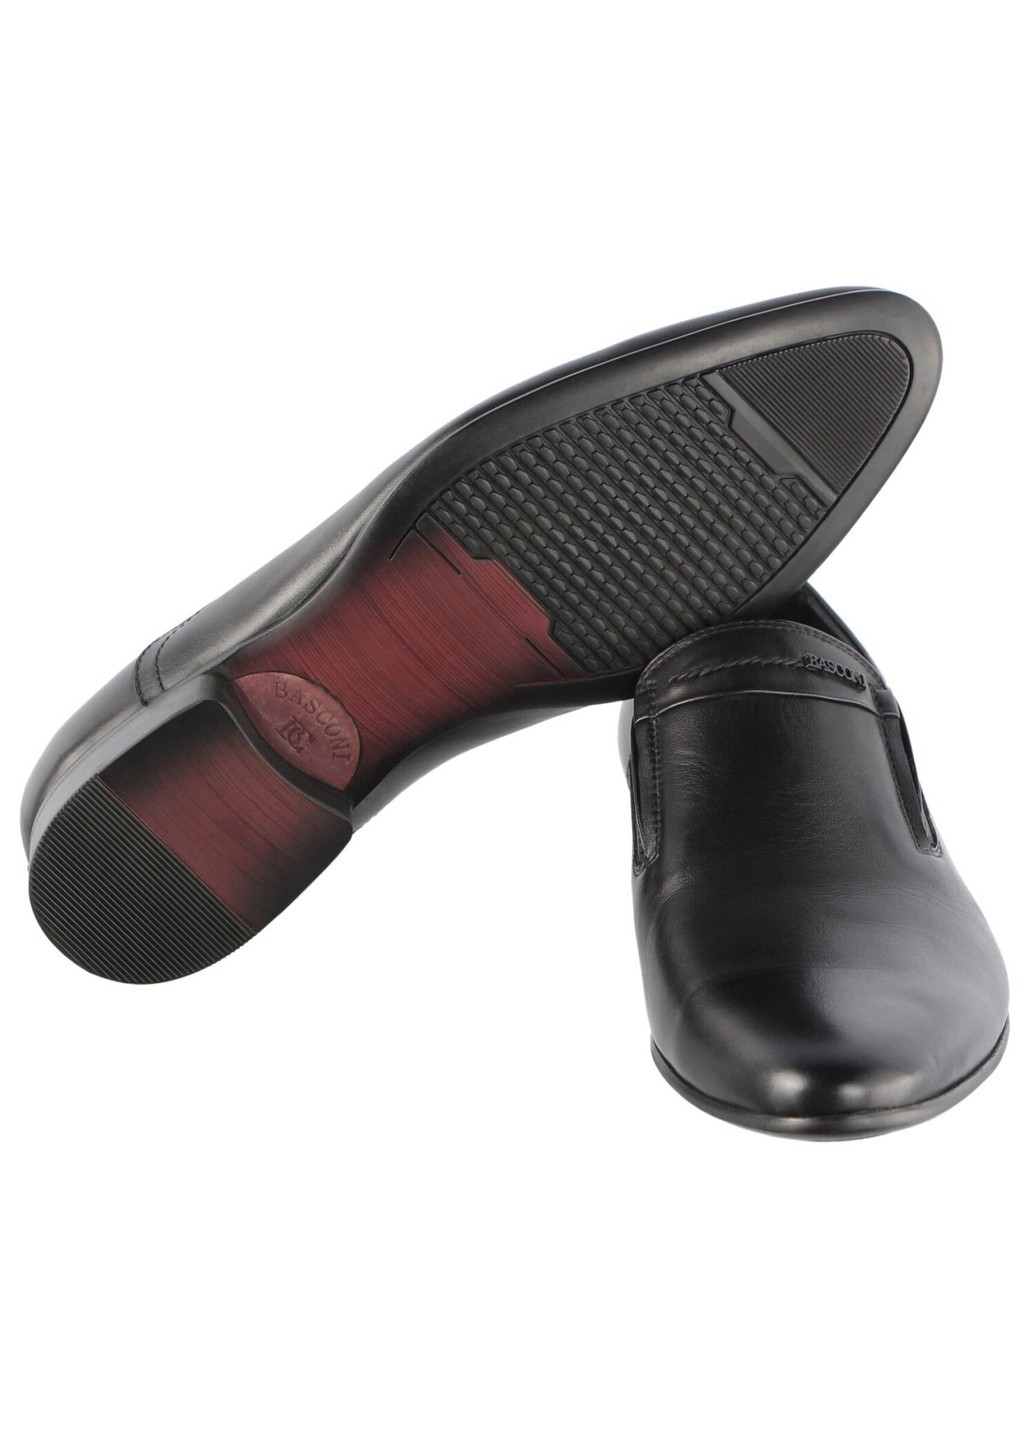 Черные мужские классические туфли 201255 Basconi без шнурков